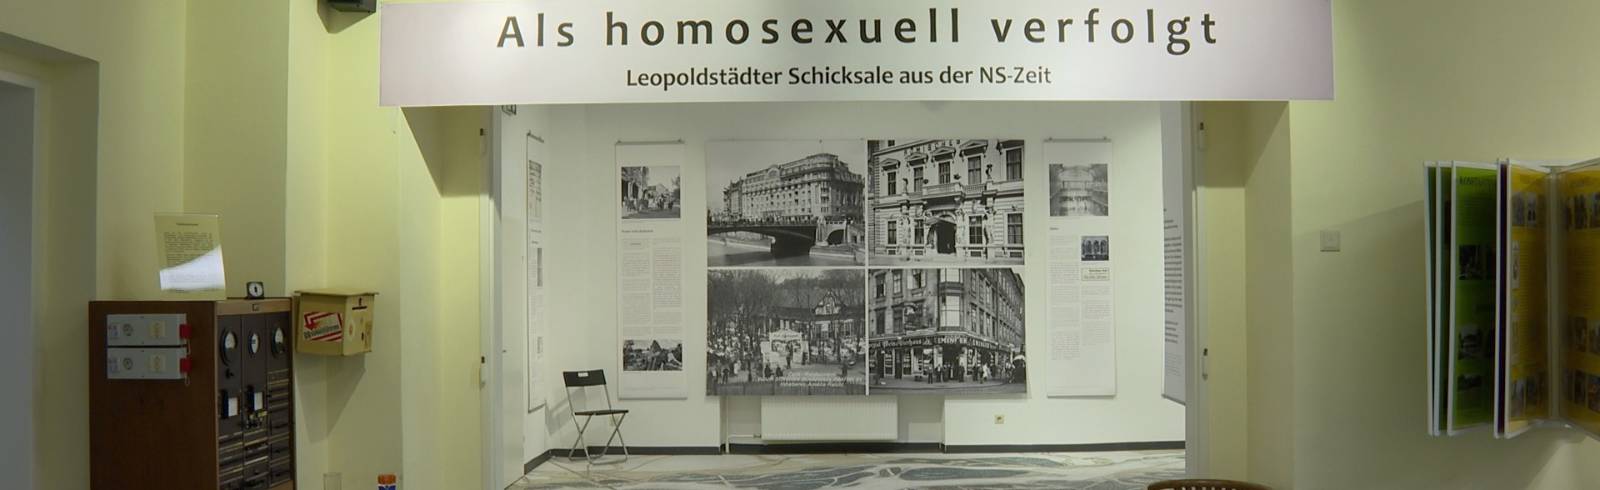 NS-Zeit: Verschwiegene, queere Geschichte